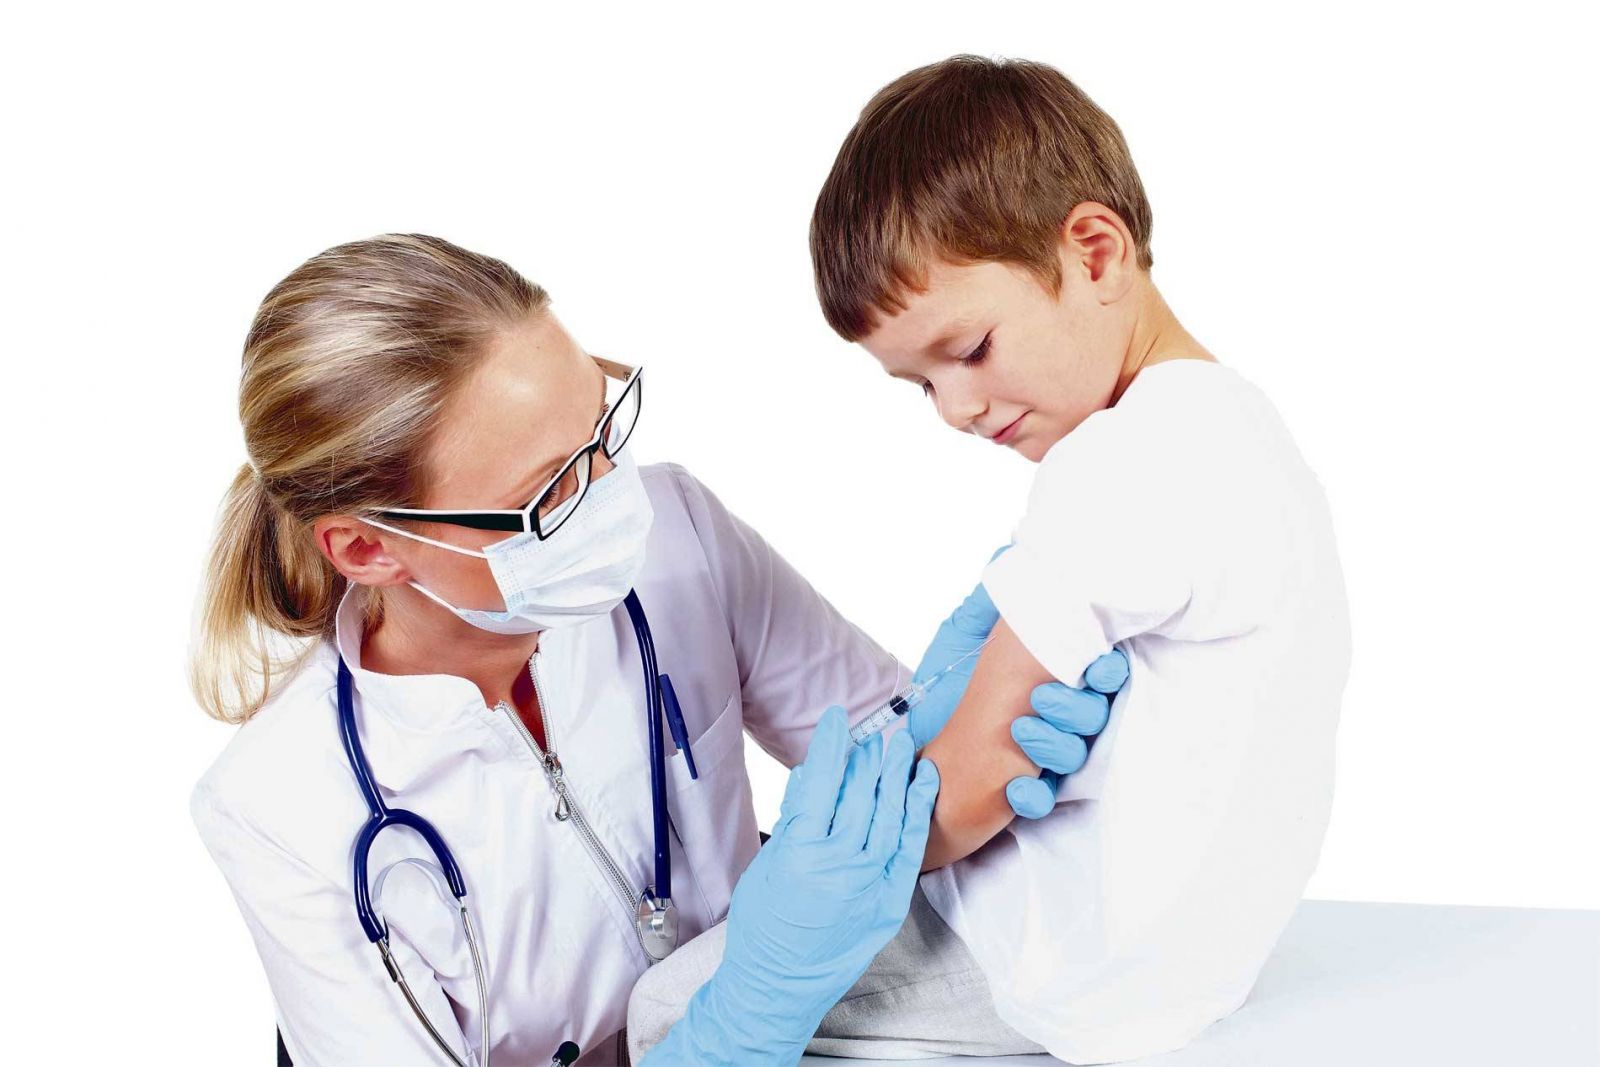 Quy trình tiêm vắc xin thương hàn cho trẻ em như thế nào?
